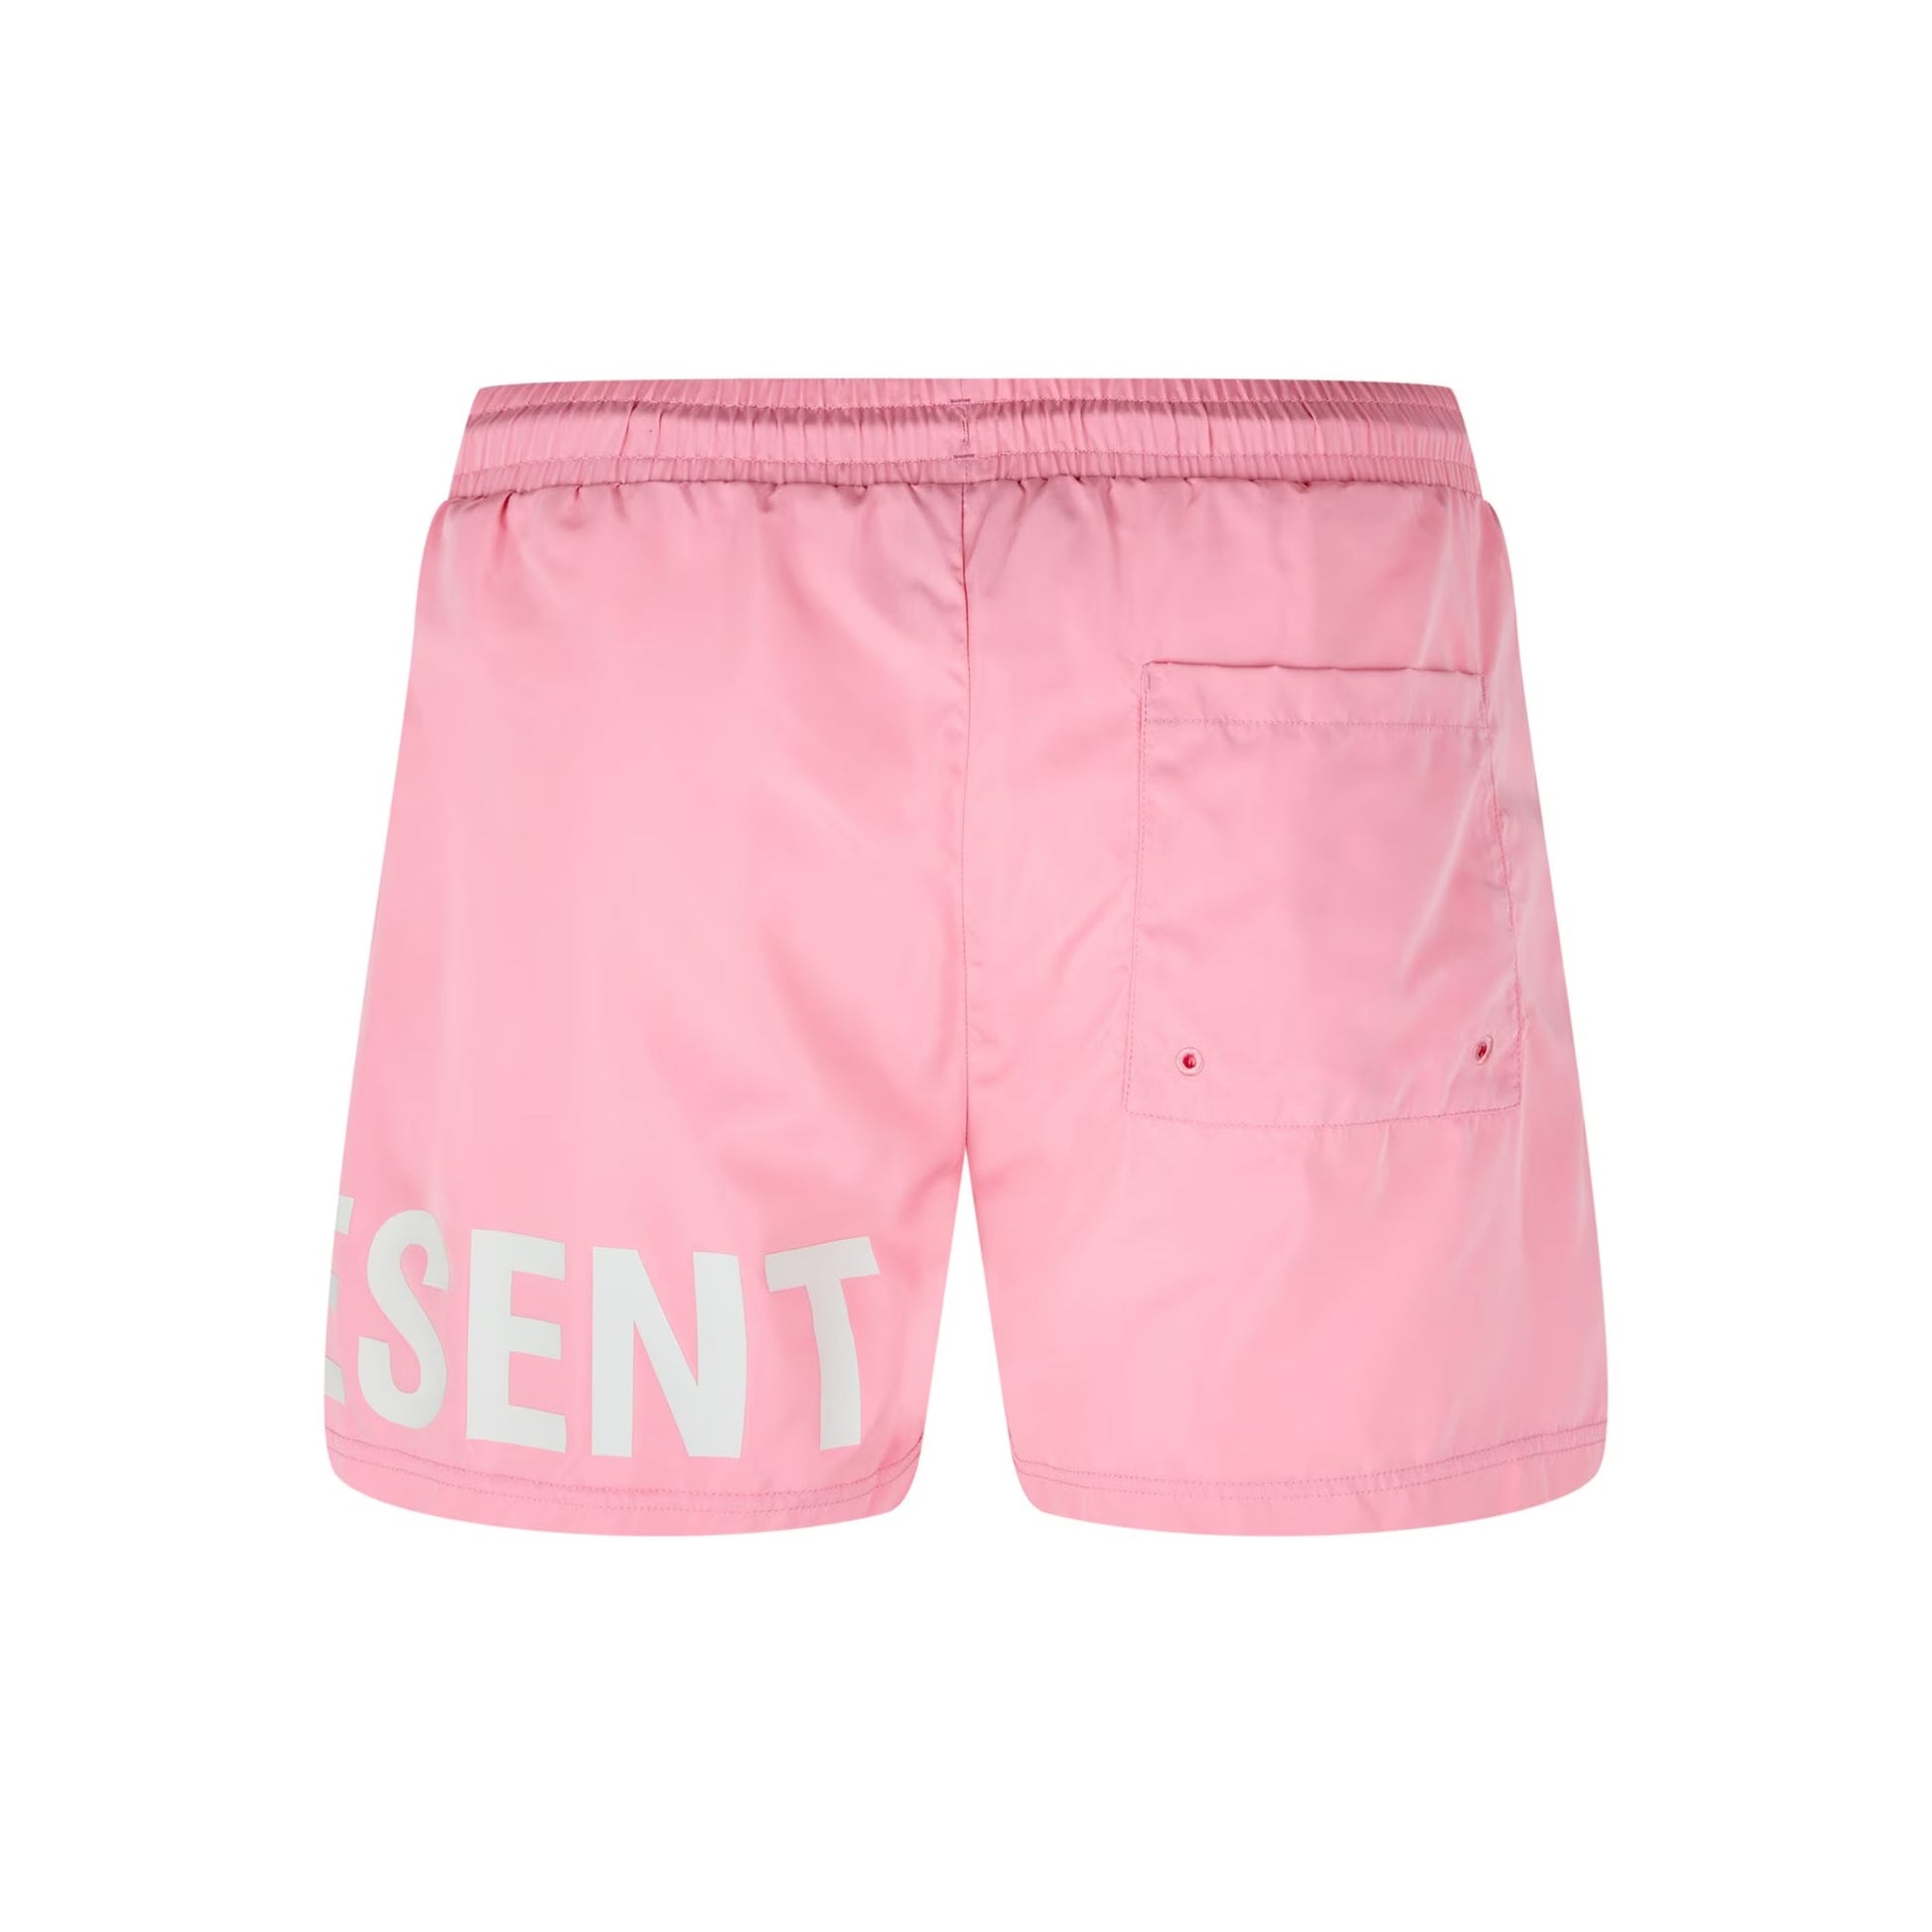 Represent Swim Short - 331 Flamingo Pink - Escape Menswear